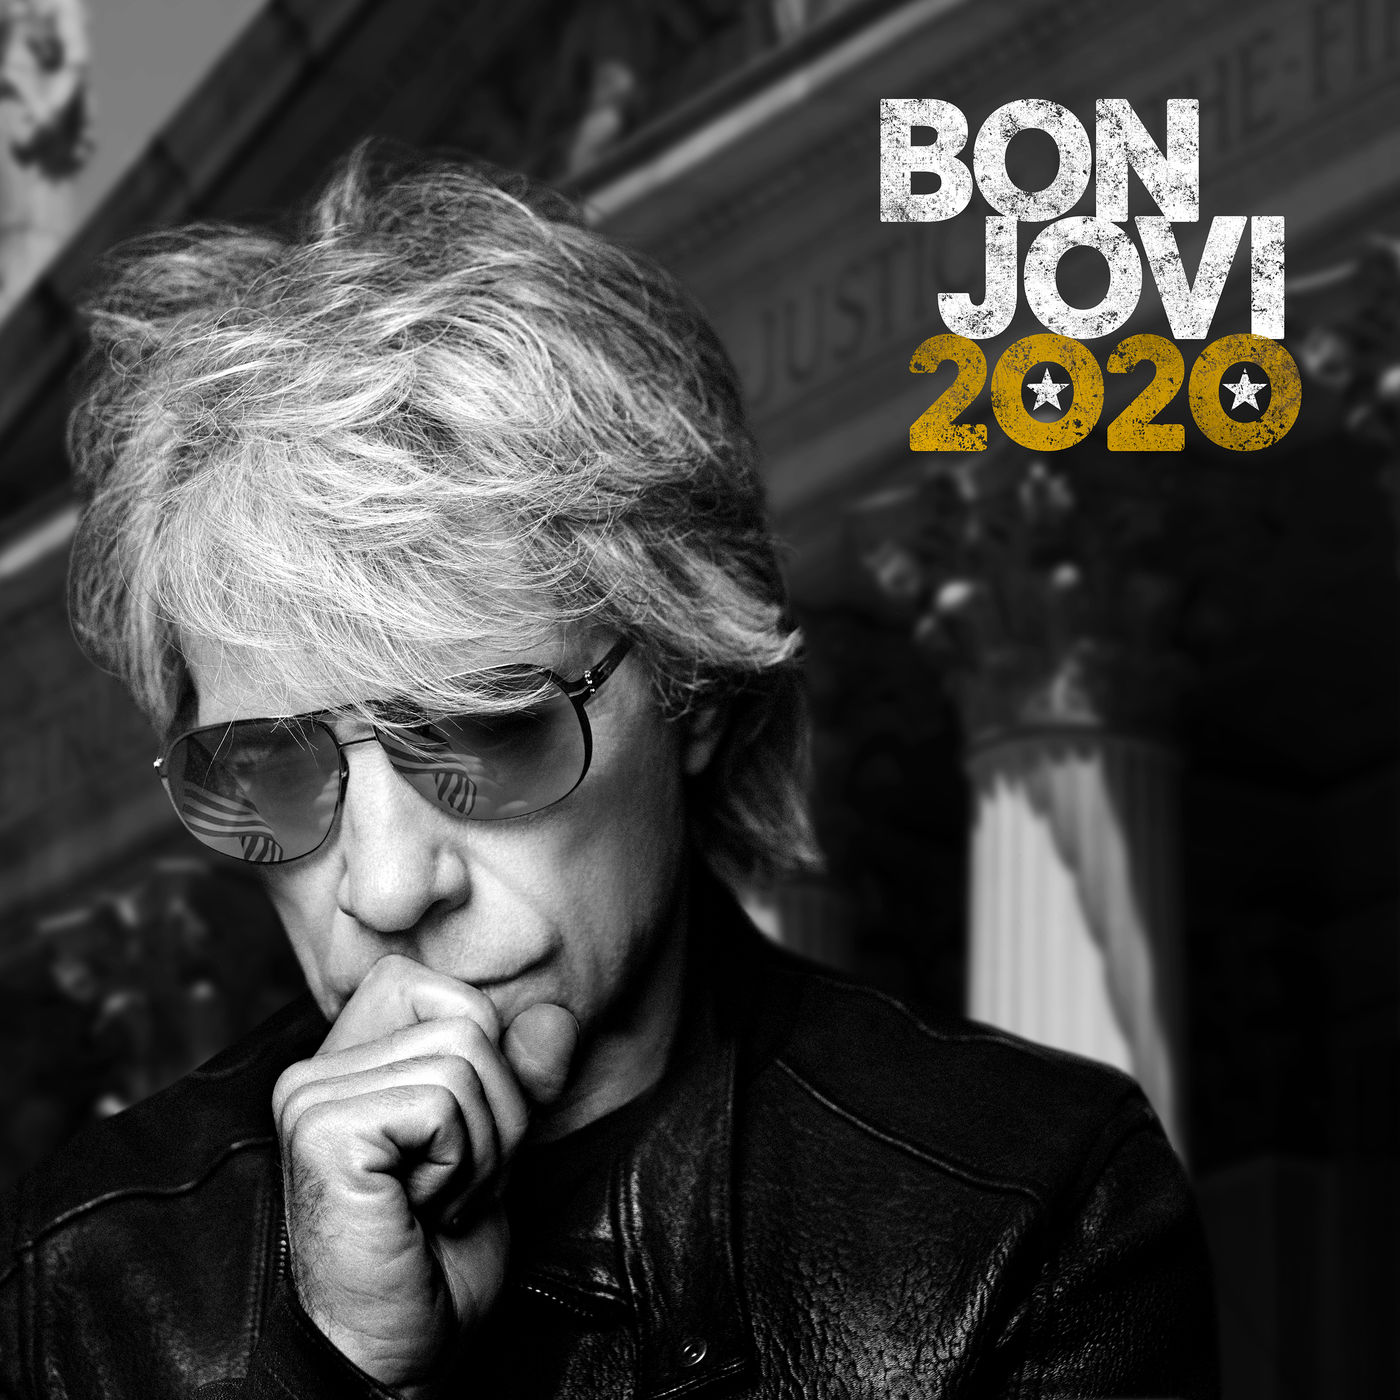 Bon Jovi - 2020 (Deluxe) (2020) [FLAC 24bit/48kHz]